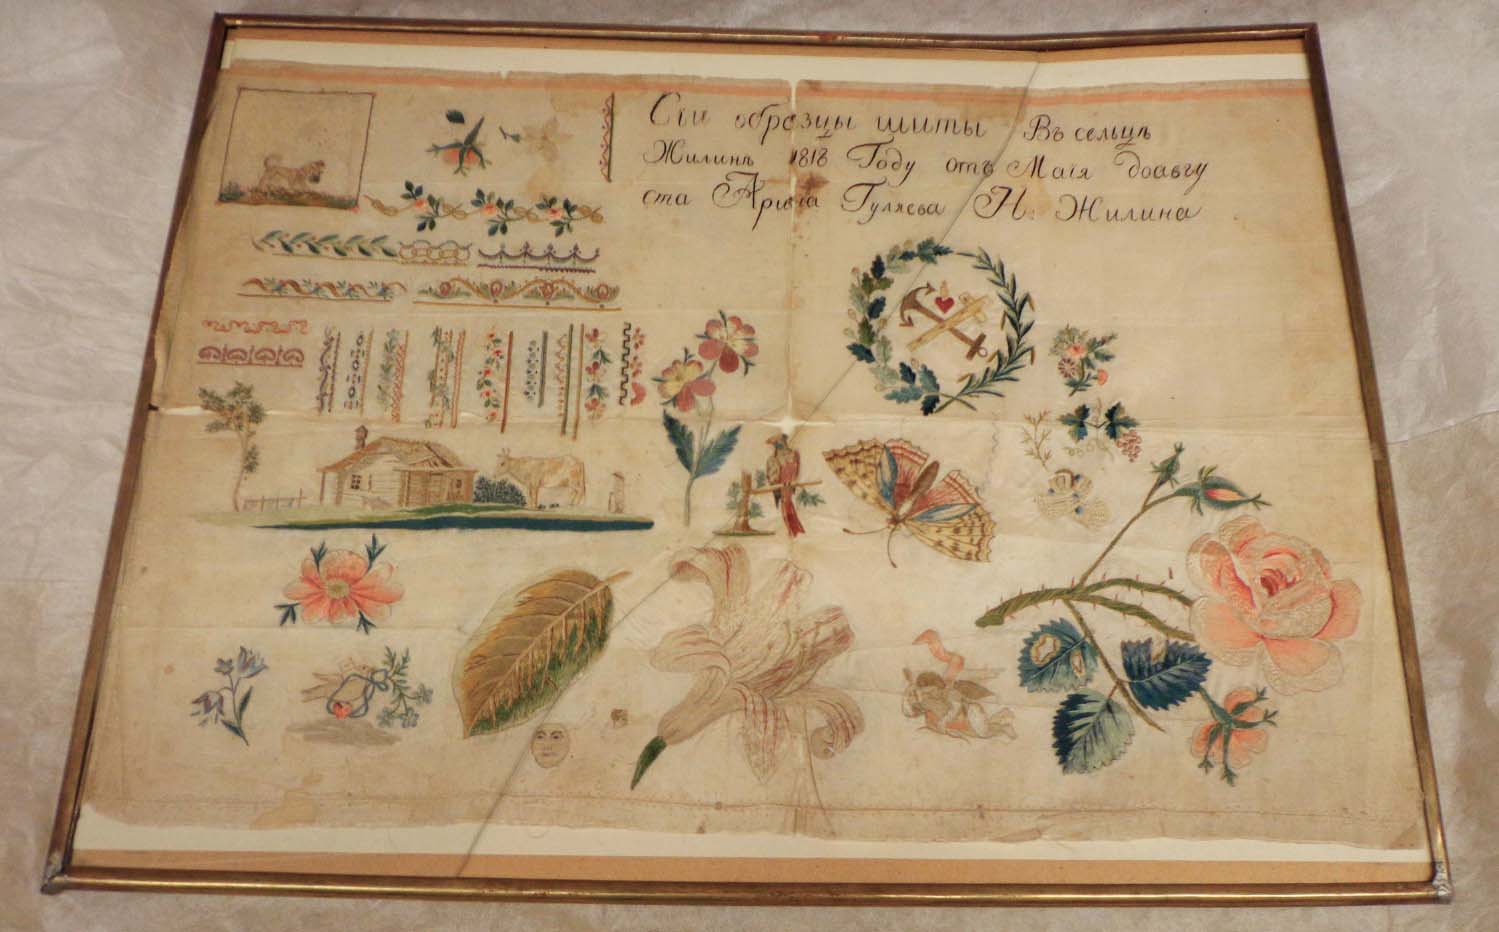 Образец вышивок. Россия, 1818 г. Атлас, шёлковые нити; ручная вышивка